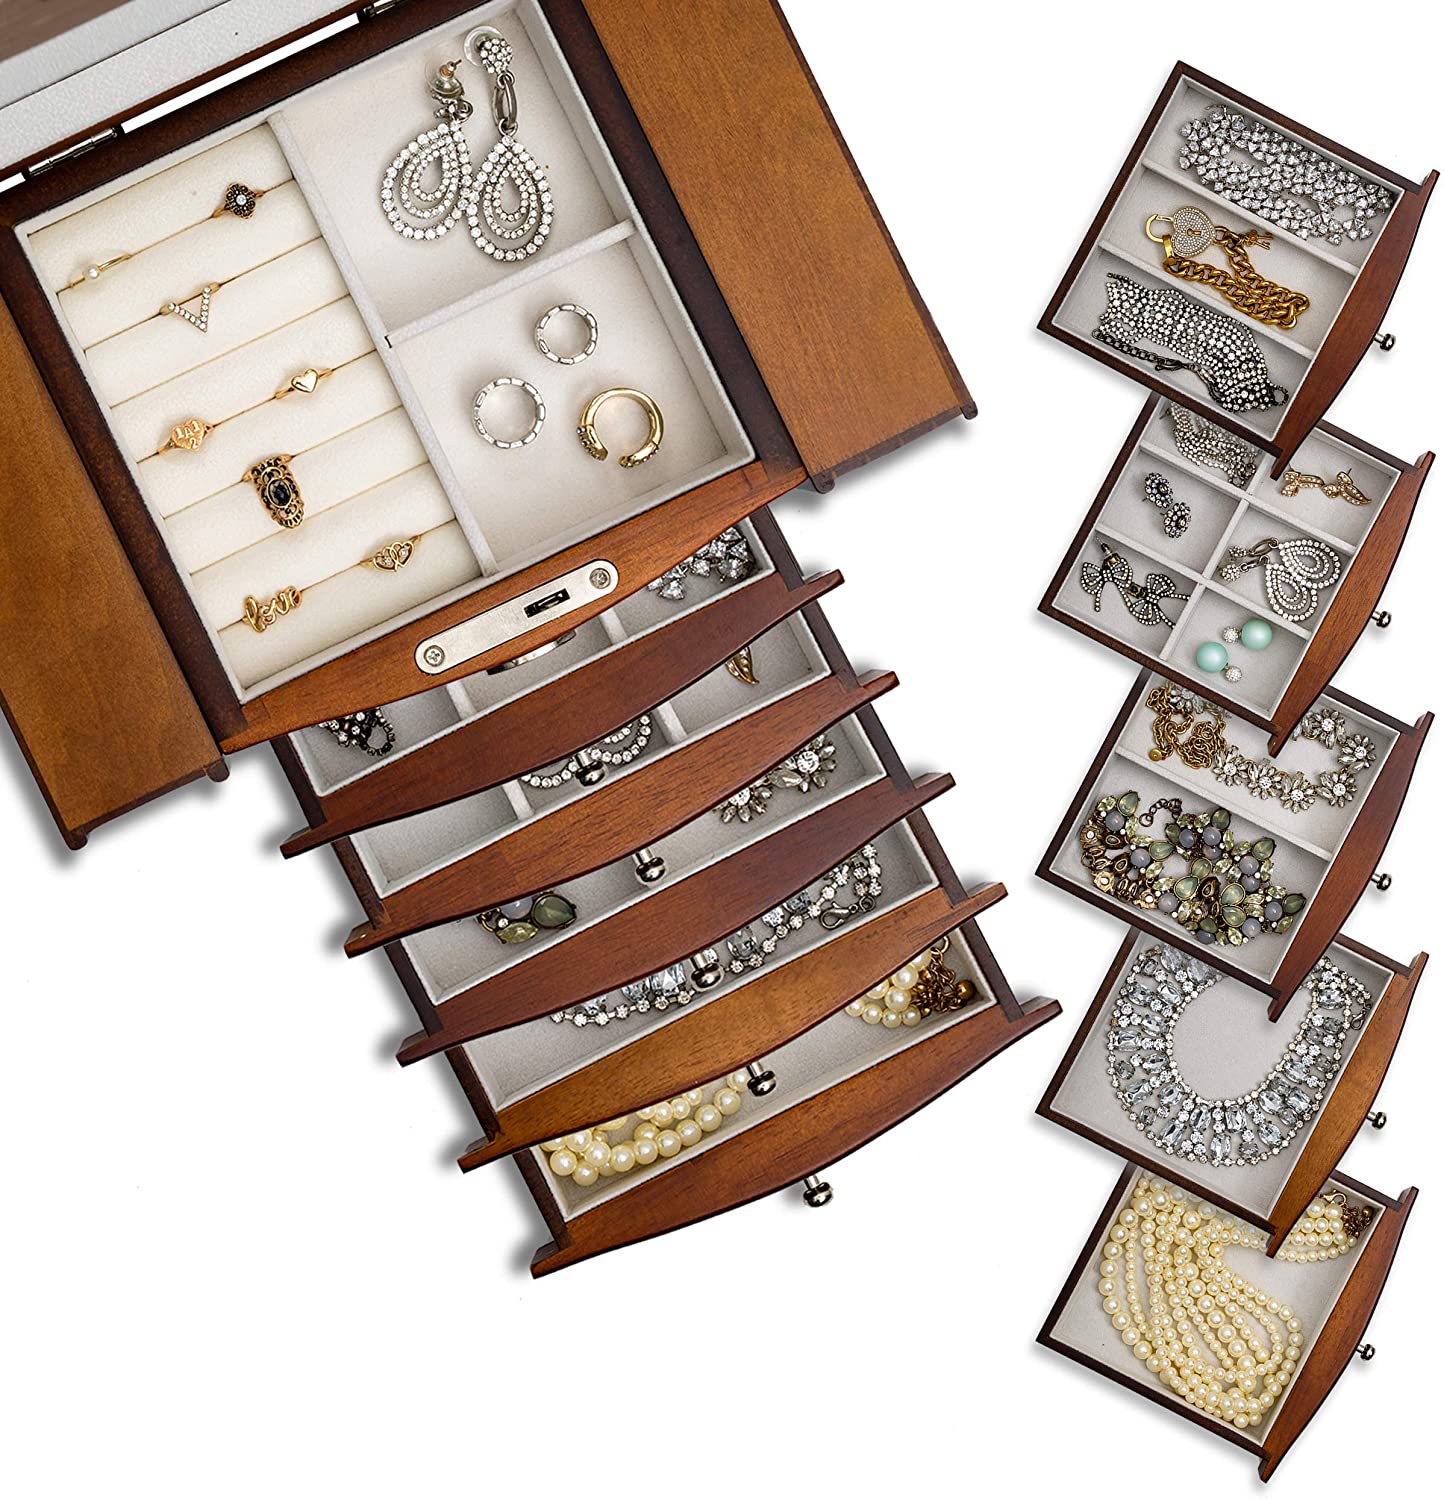 Portagioie in legno, organizzatore a 6 cassetti, mobiletto gioielli e preziosi (MARRONE) - Gmk Design